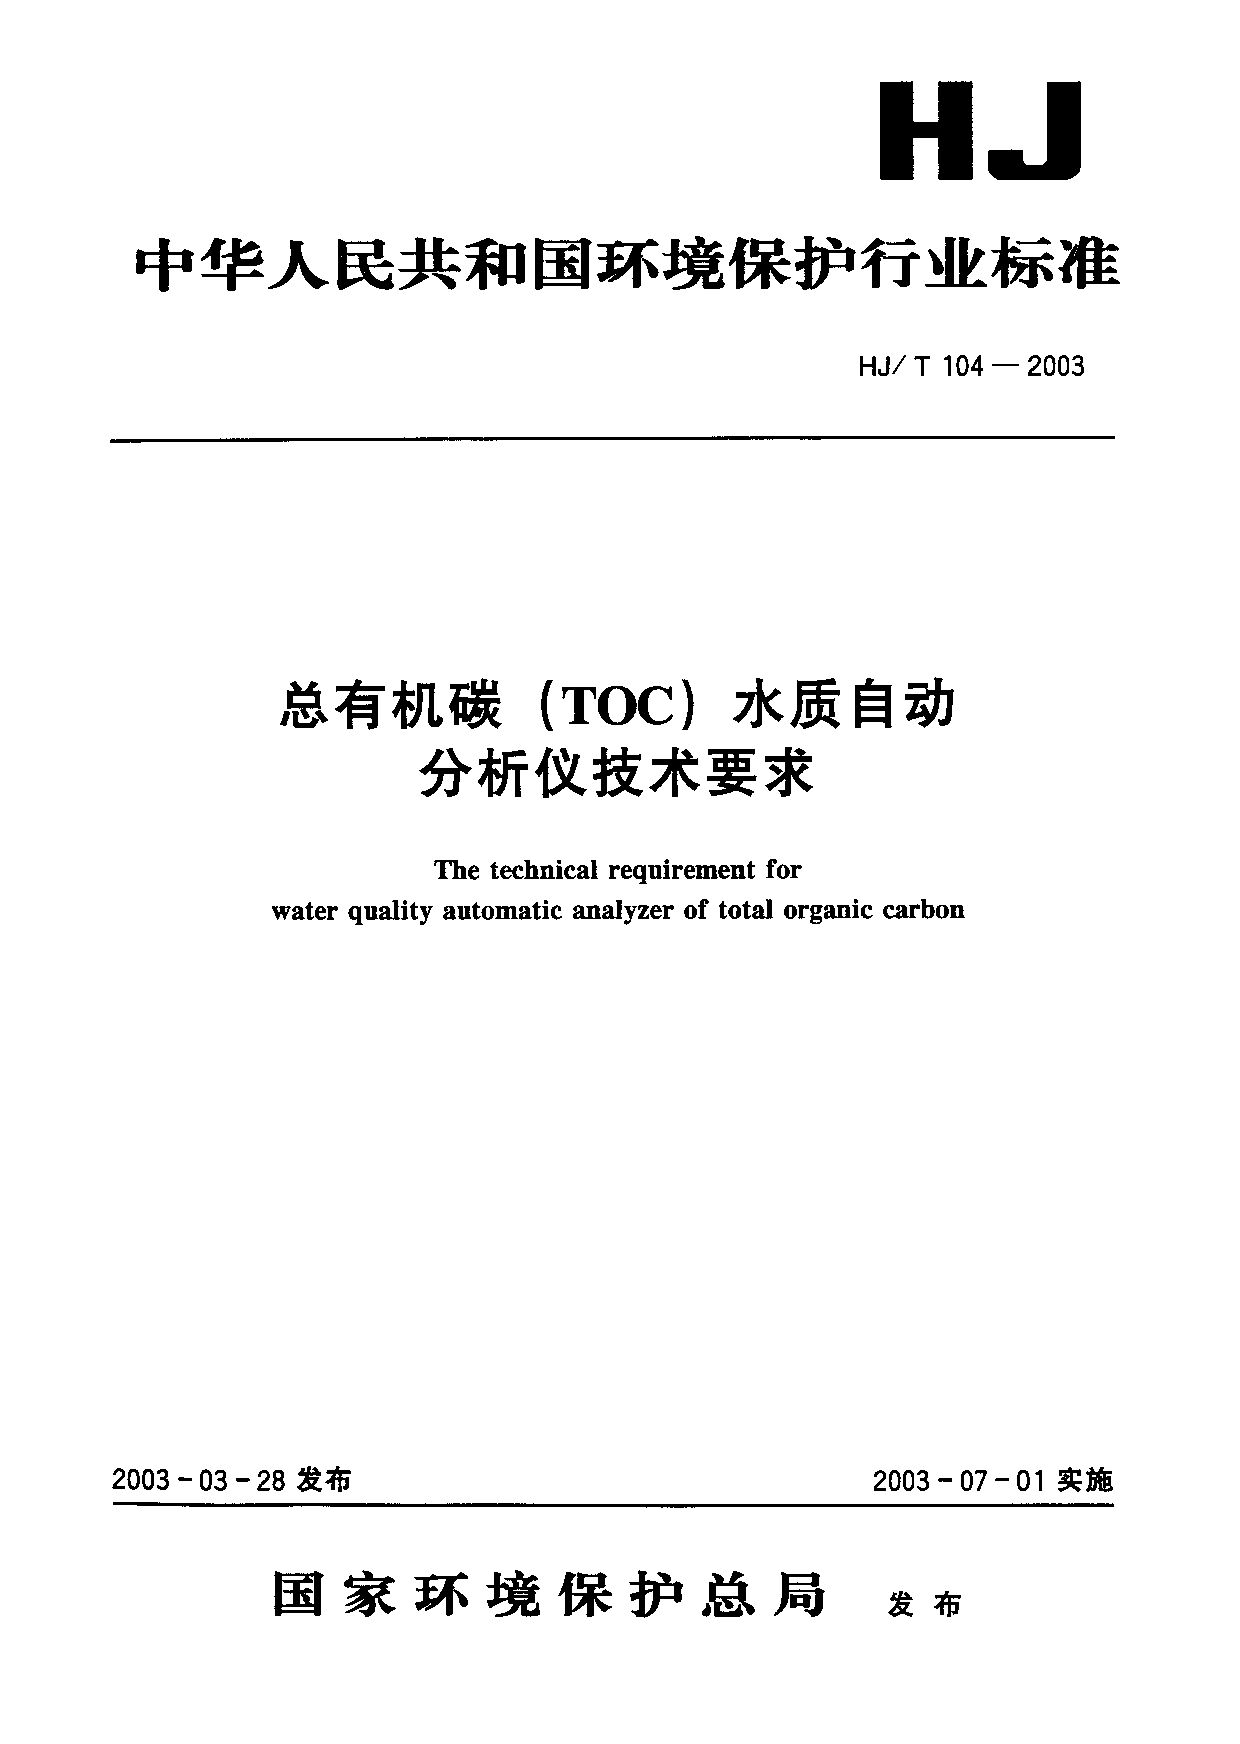 HJ/T 104-2003封面图